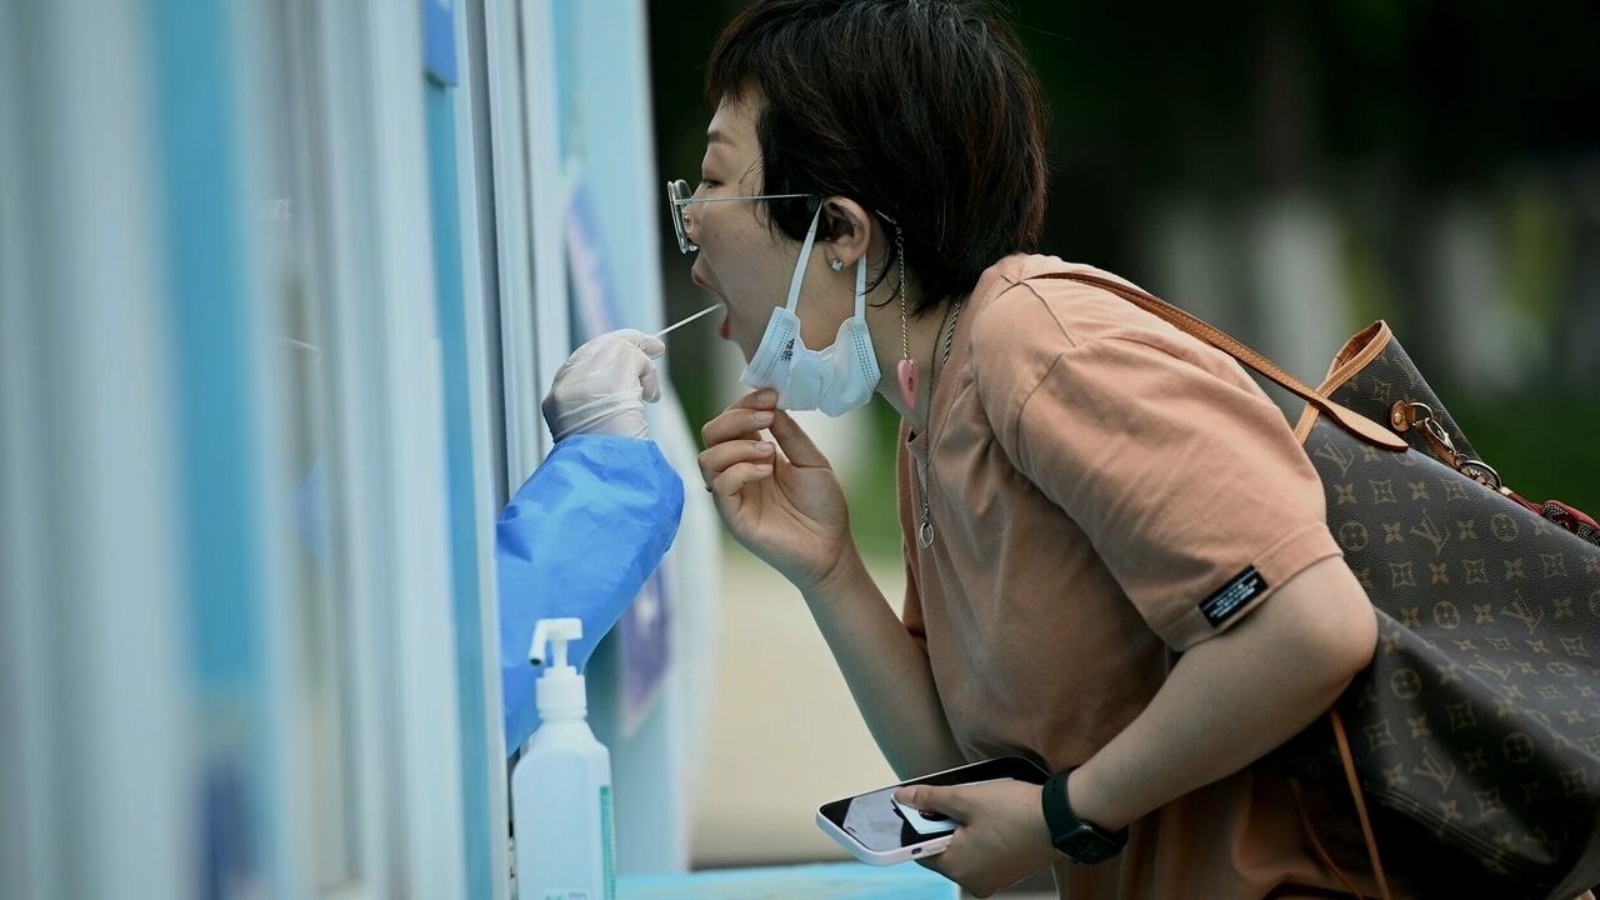 عاملة في المجال الصحي تجري فحص الكشف عن الإصابة بكوفيد-19 لإمرأة في بكين في 19 يونيو 2022